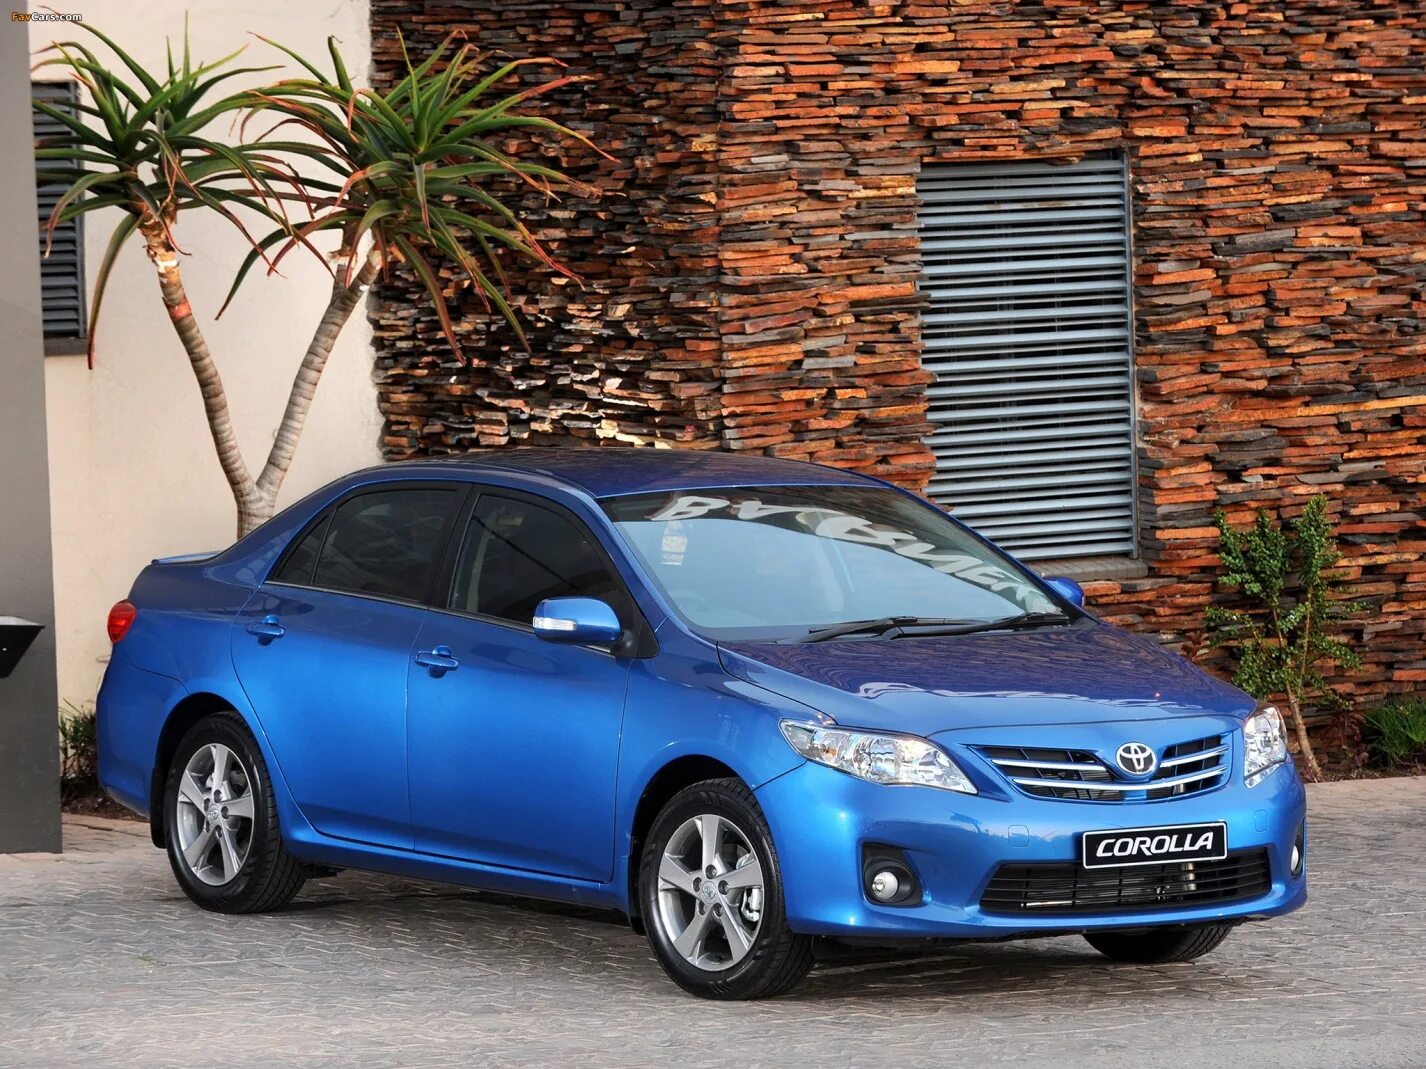 Toyota Corolla 2010. Тойота Королла Toyota Corolla. Toyota Corolla 2013 Blue. Тойота Королла 2013 синяя.